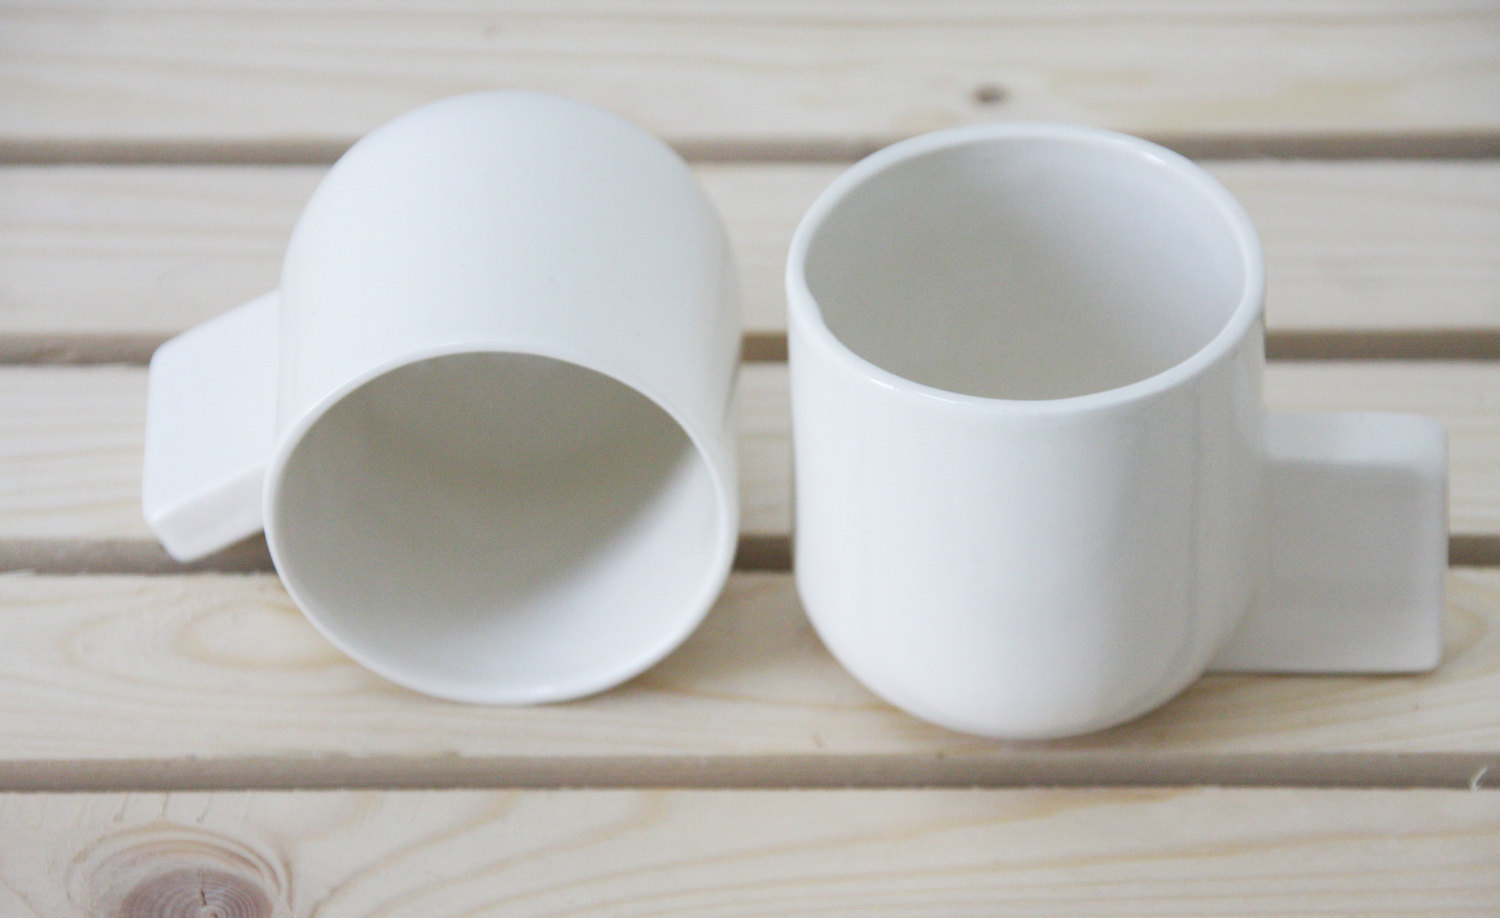 Ceramic espresso cup by ONEandMANY | Flodeau.com